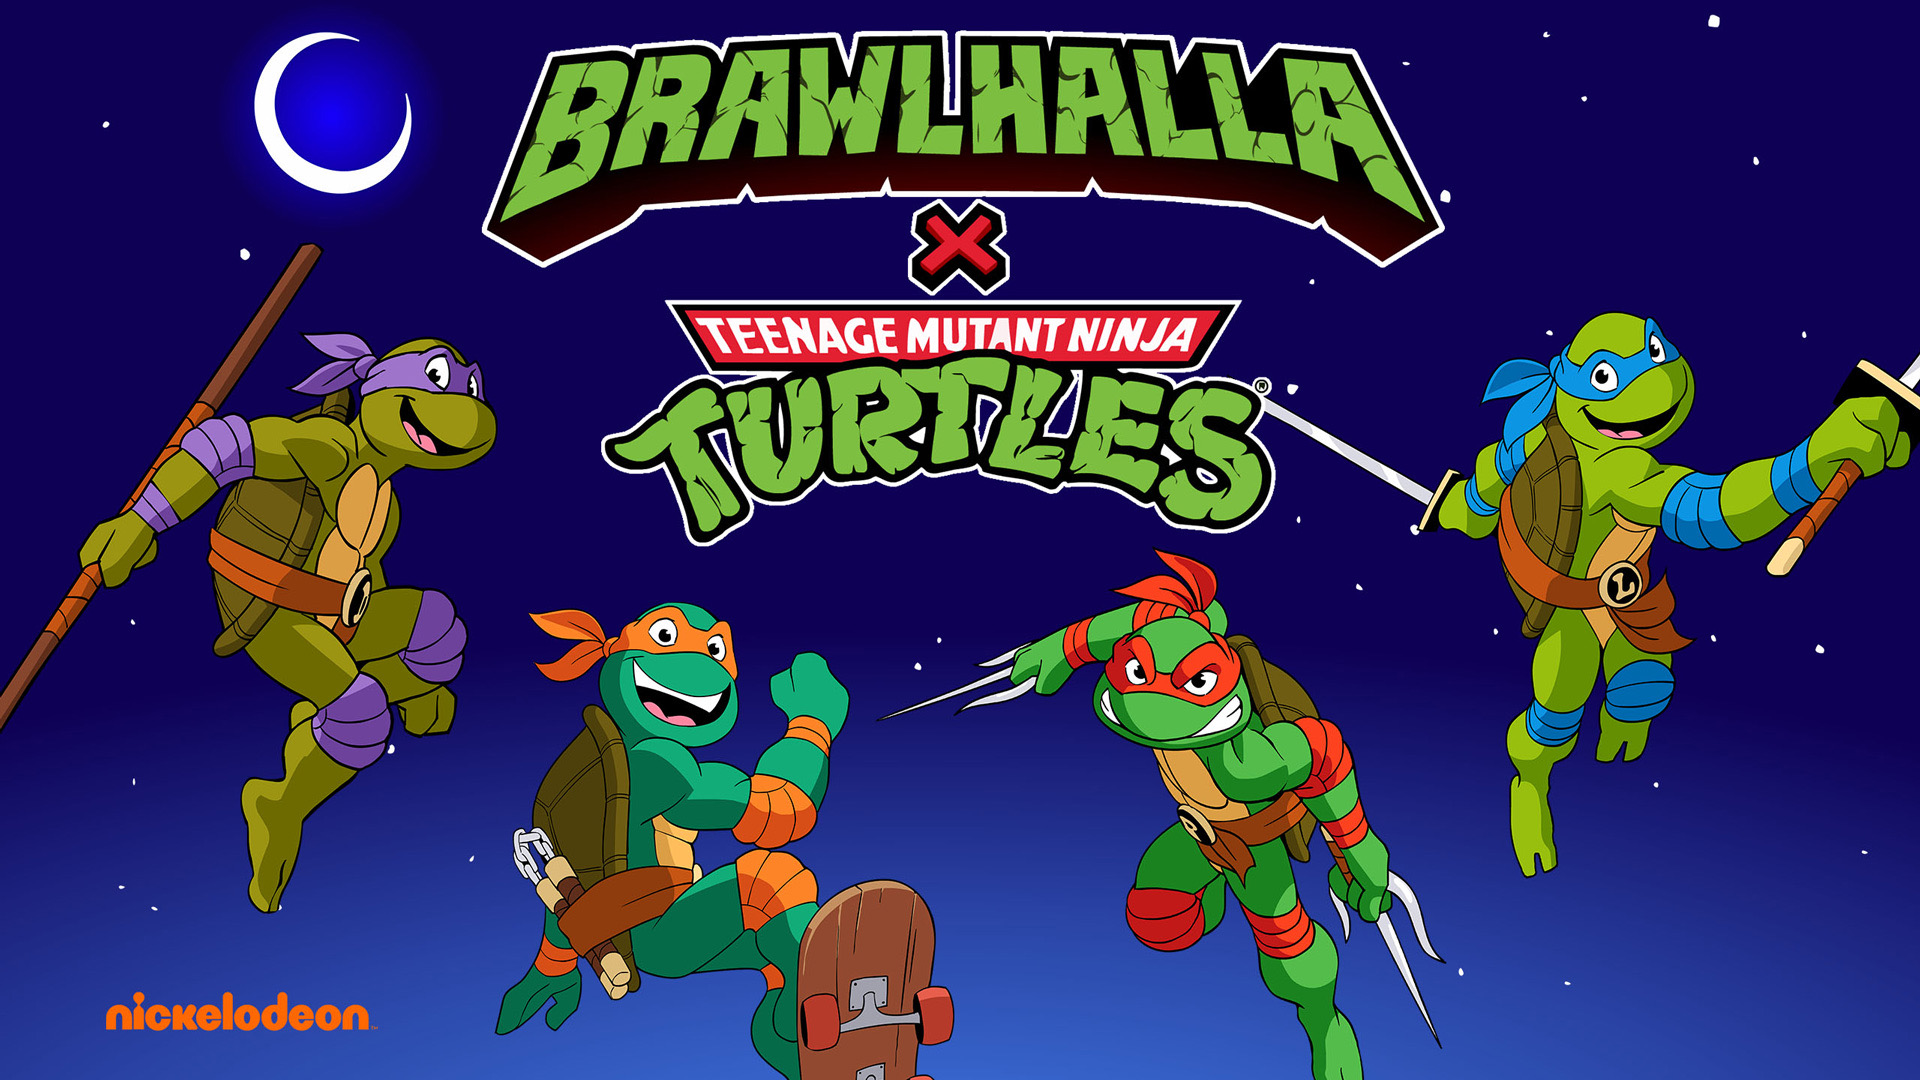 Teenage Mutant Ninja Turtles Brawlhalla Crossover Announced Geek